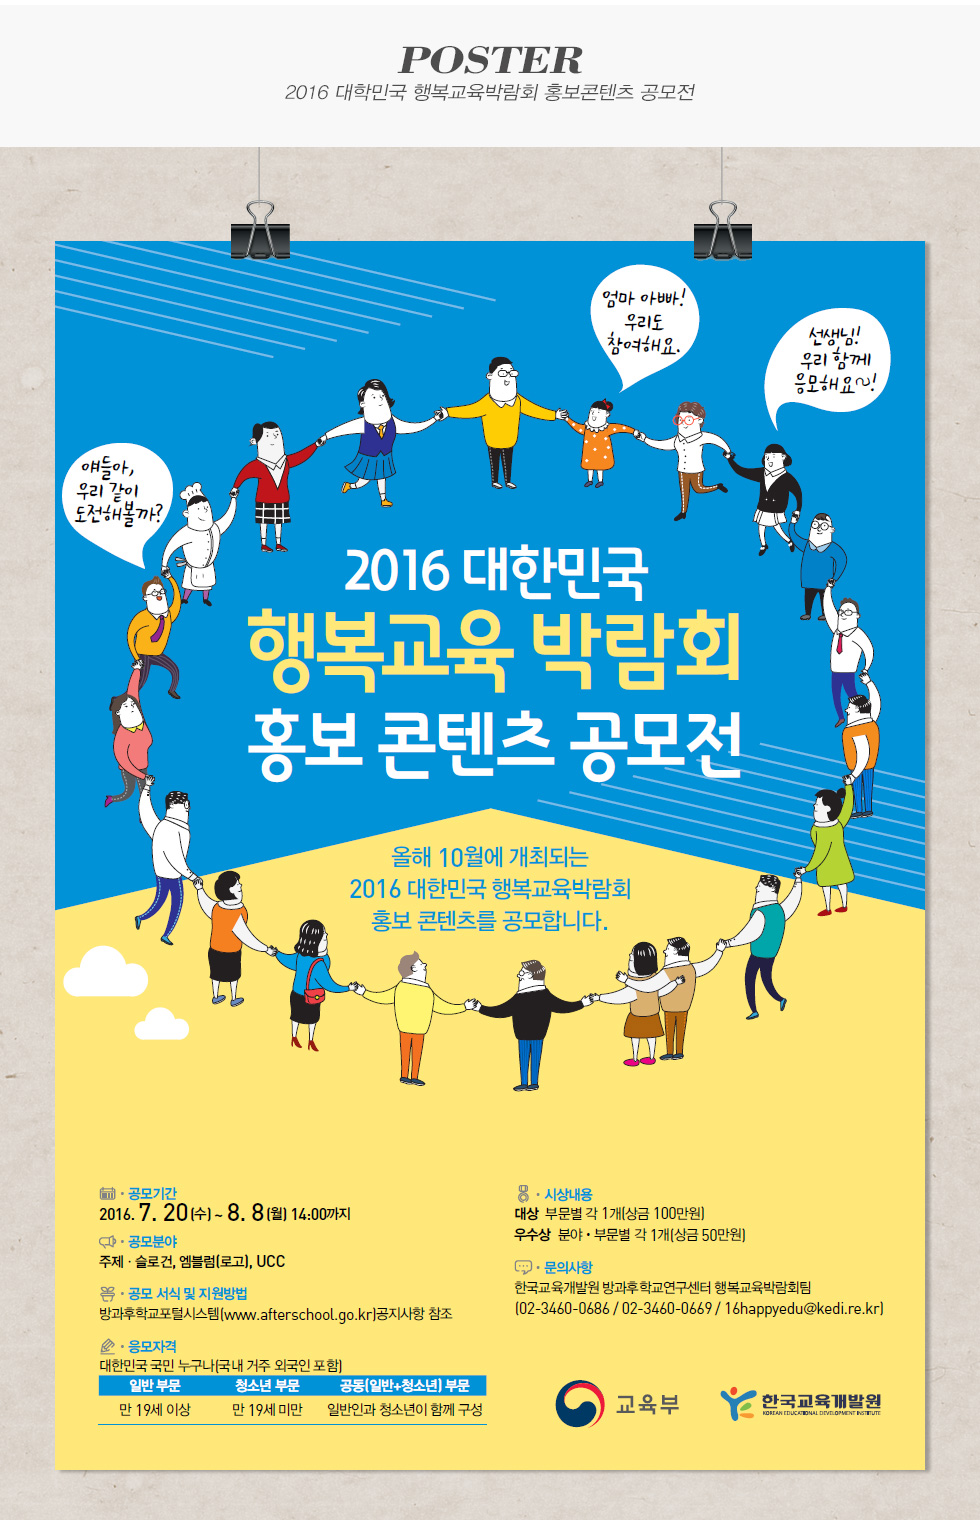 [디자인펌킨 | 대한민국 행복교육박람회 홍보콘텐츠 공모전] 한국교육개발원/행복교육박람회/공모전/포스터 | 포트폴리오 상세이미지